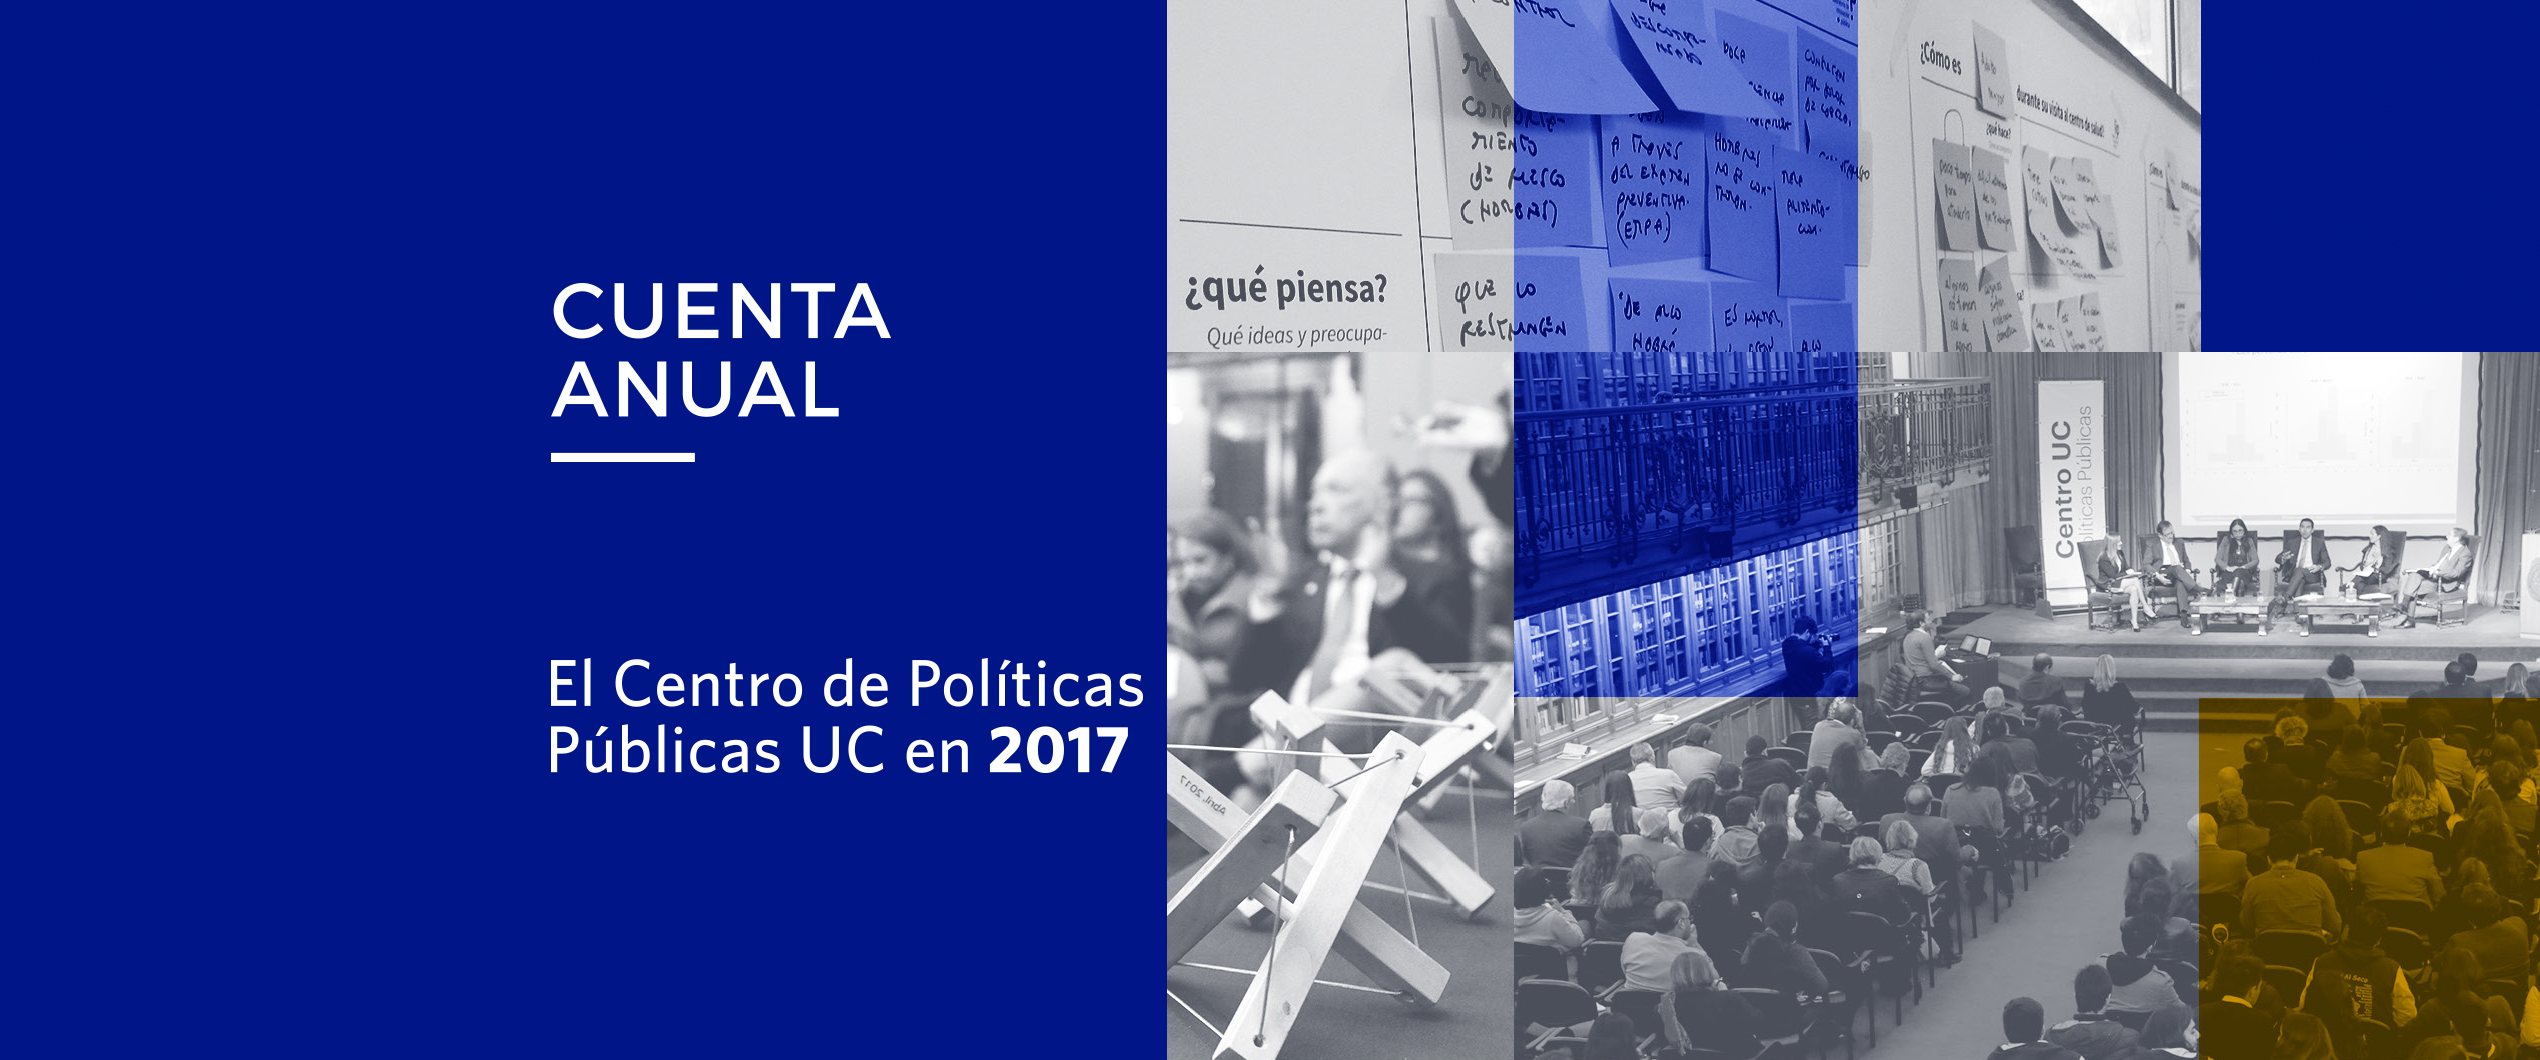 Imagen de CUENTA ANUAL 2017 – Centro de Políticas Públicas UC